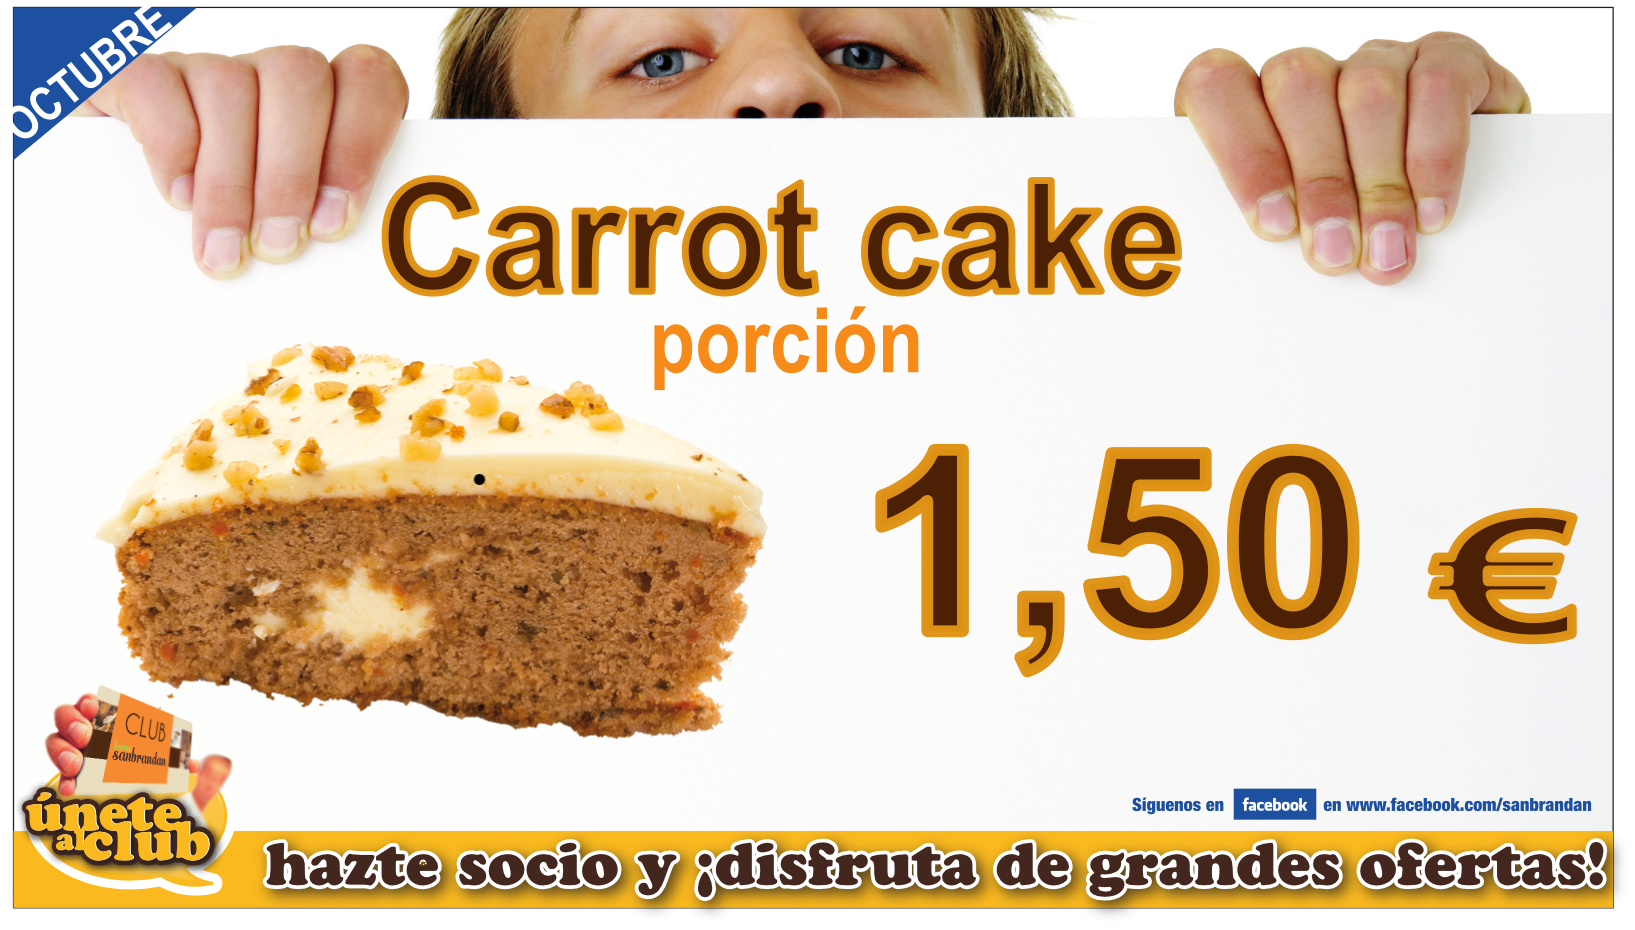 Porción de carrot cake por 1,50 €